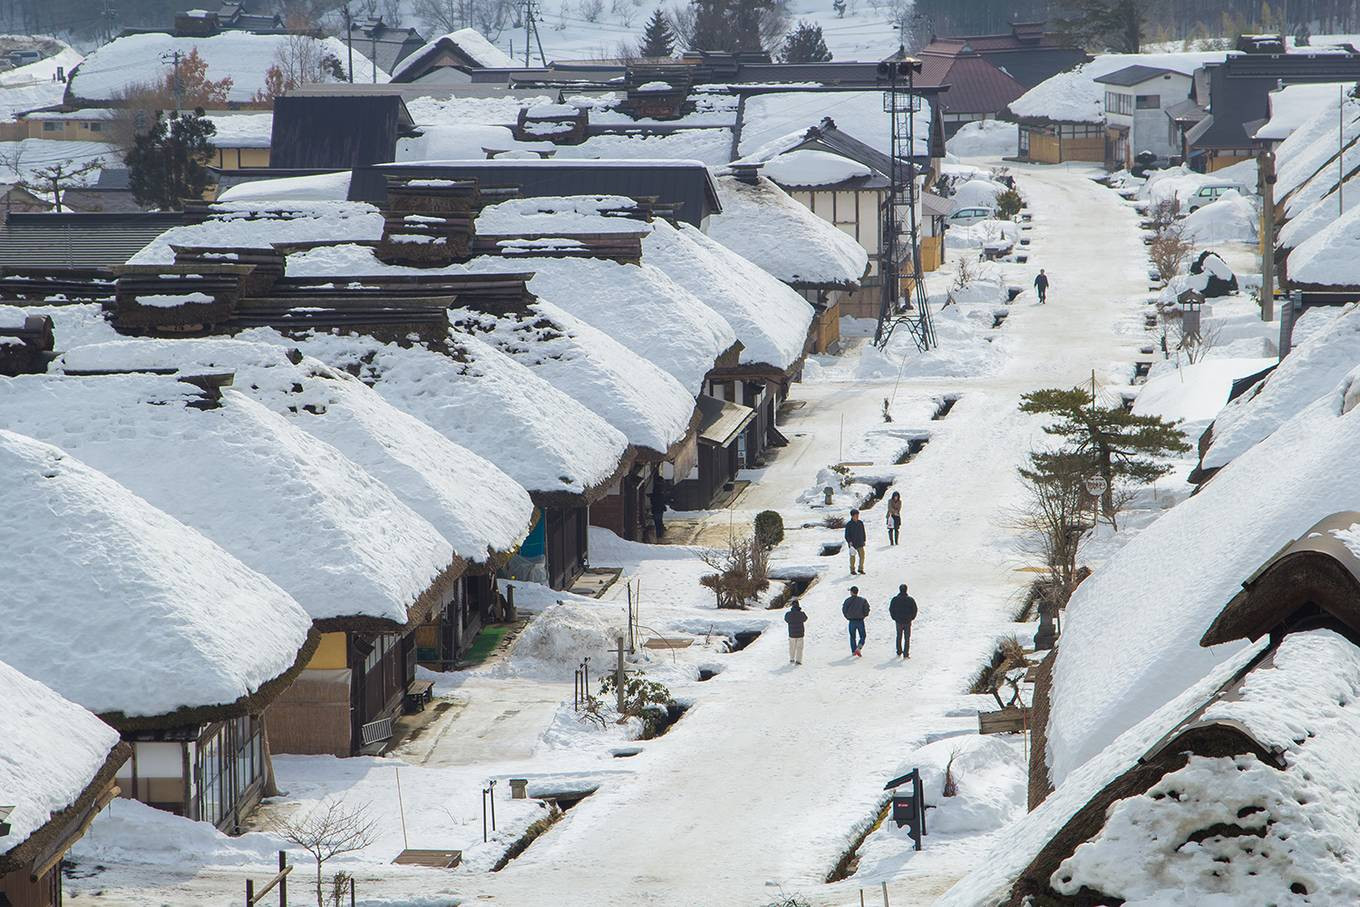 Ngôi làng cổ phủ tuyết như cổ tích. Ảnh: Em7/ConanEdogawa/Shutterstock.